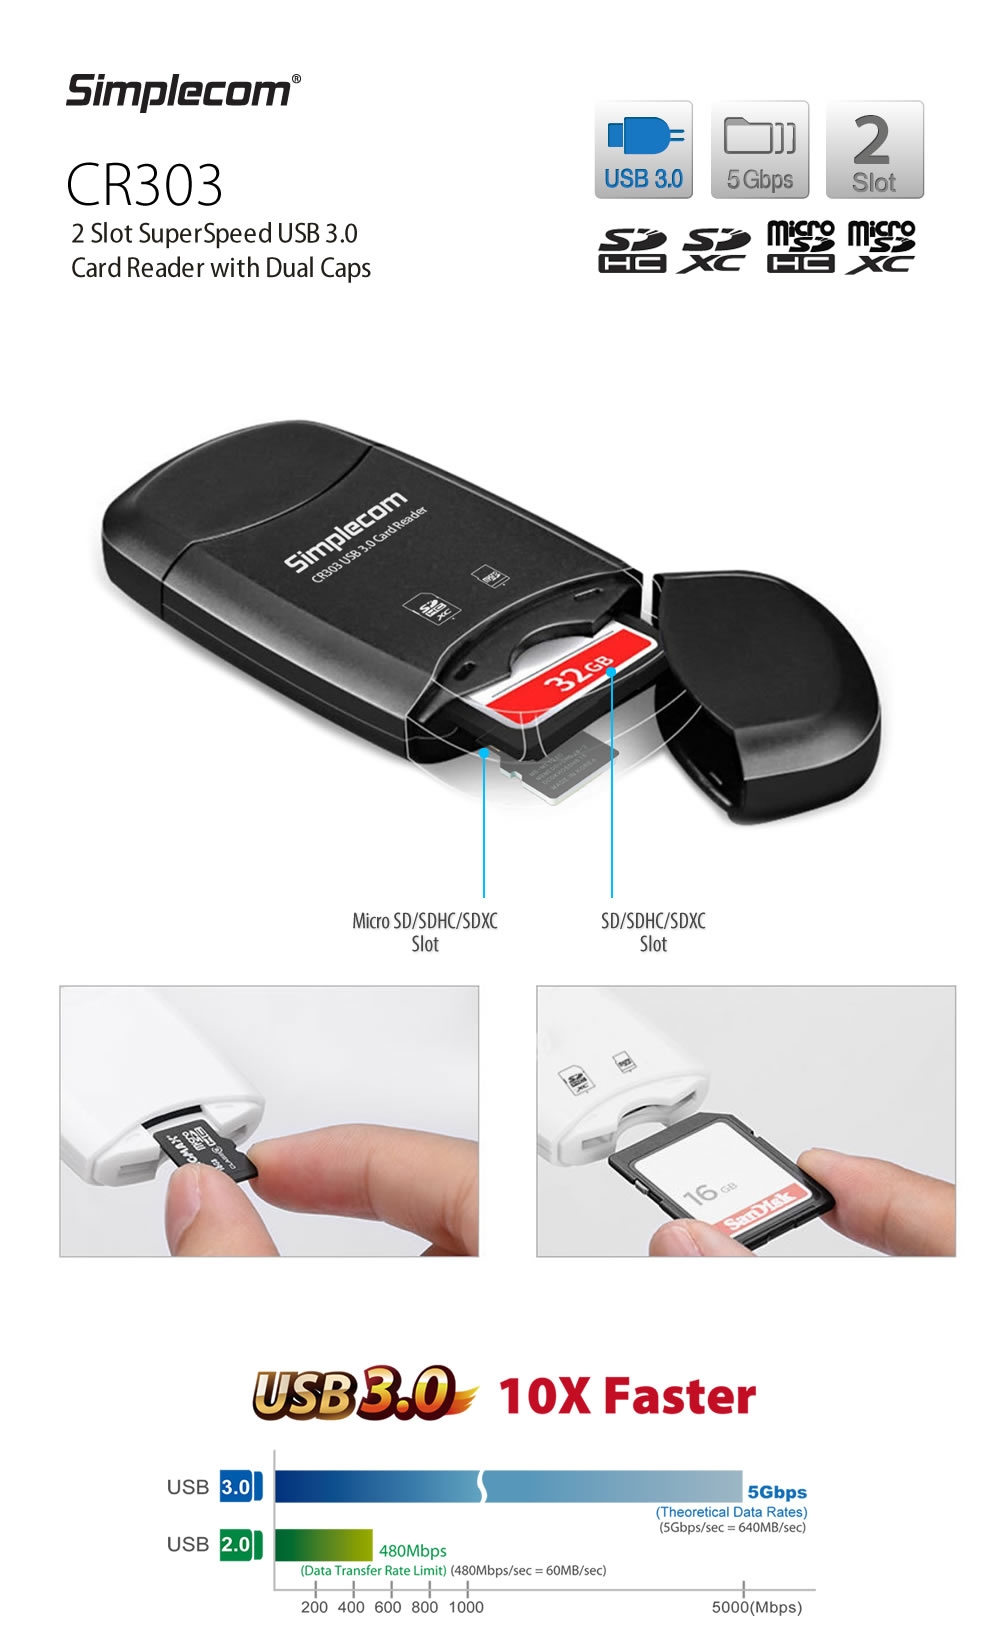 Simplecom CR303 2 Slot SuperSpeed USB 3.0 Card Reader - Black - Desktop Overview 1